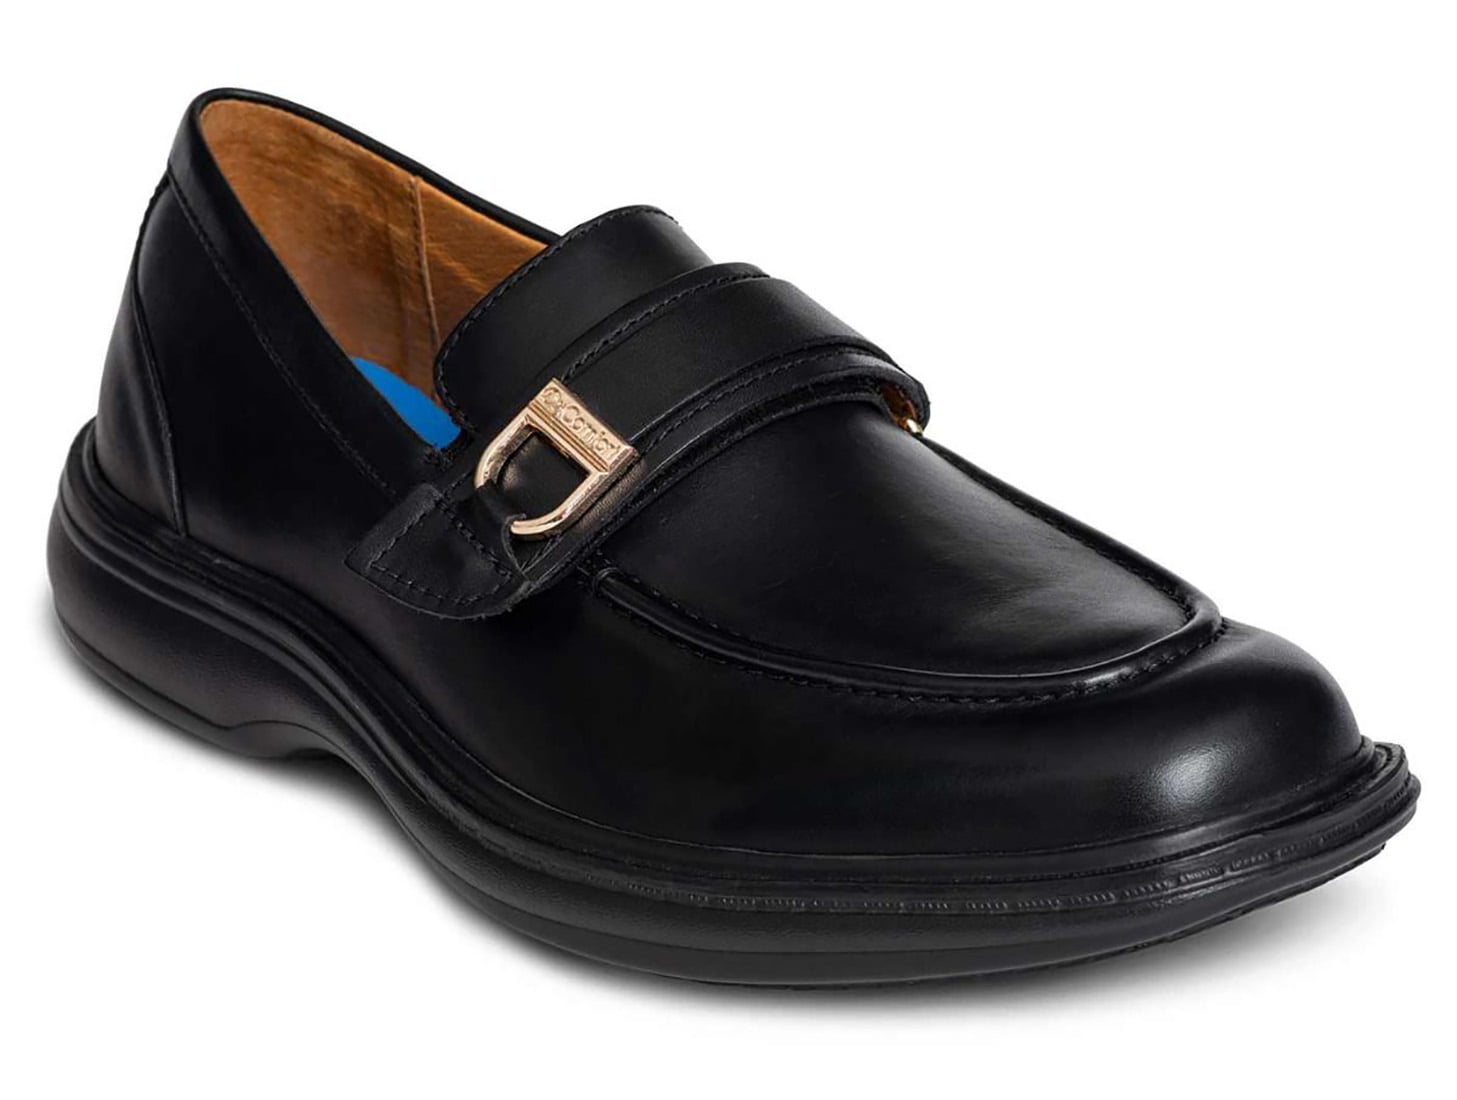 13 wide mens dress shoes